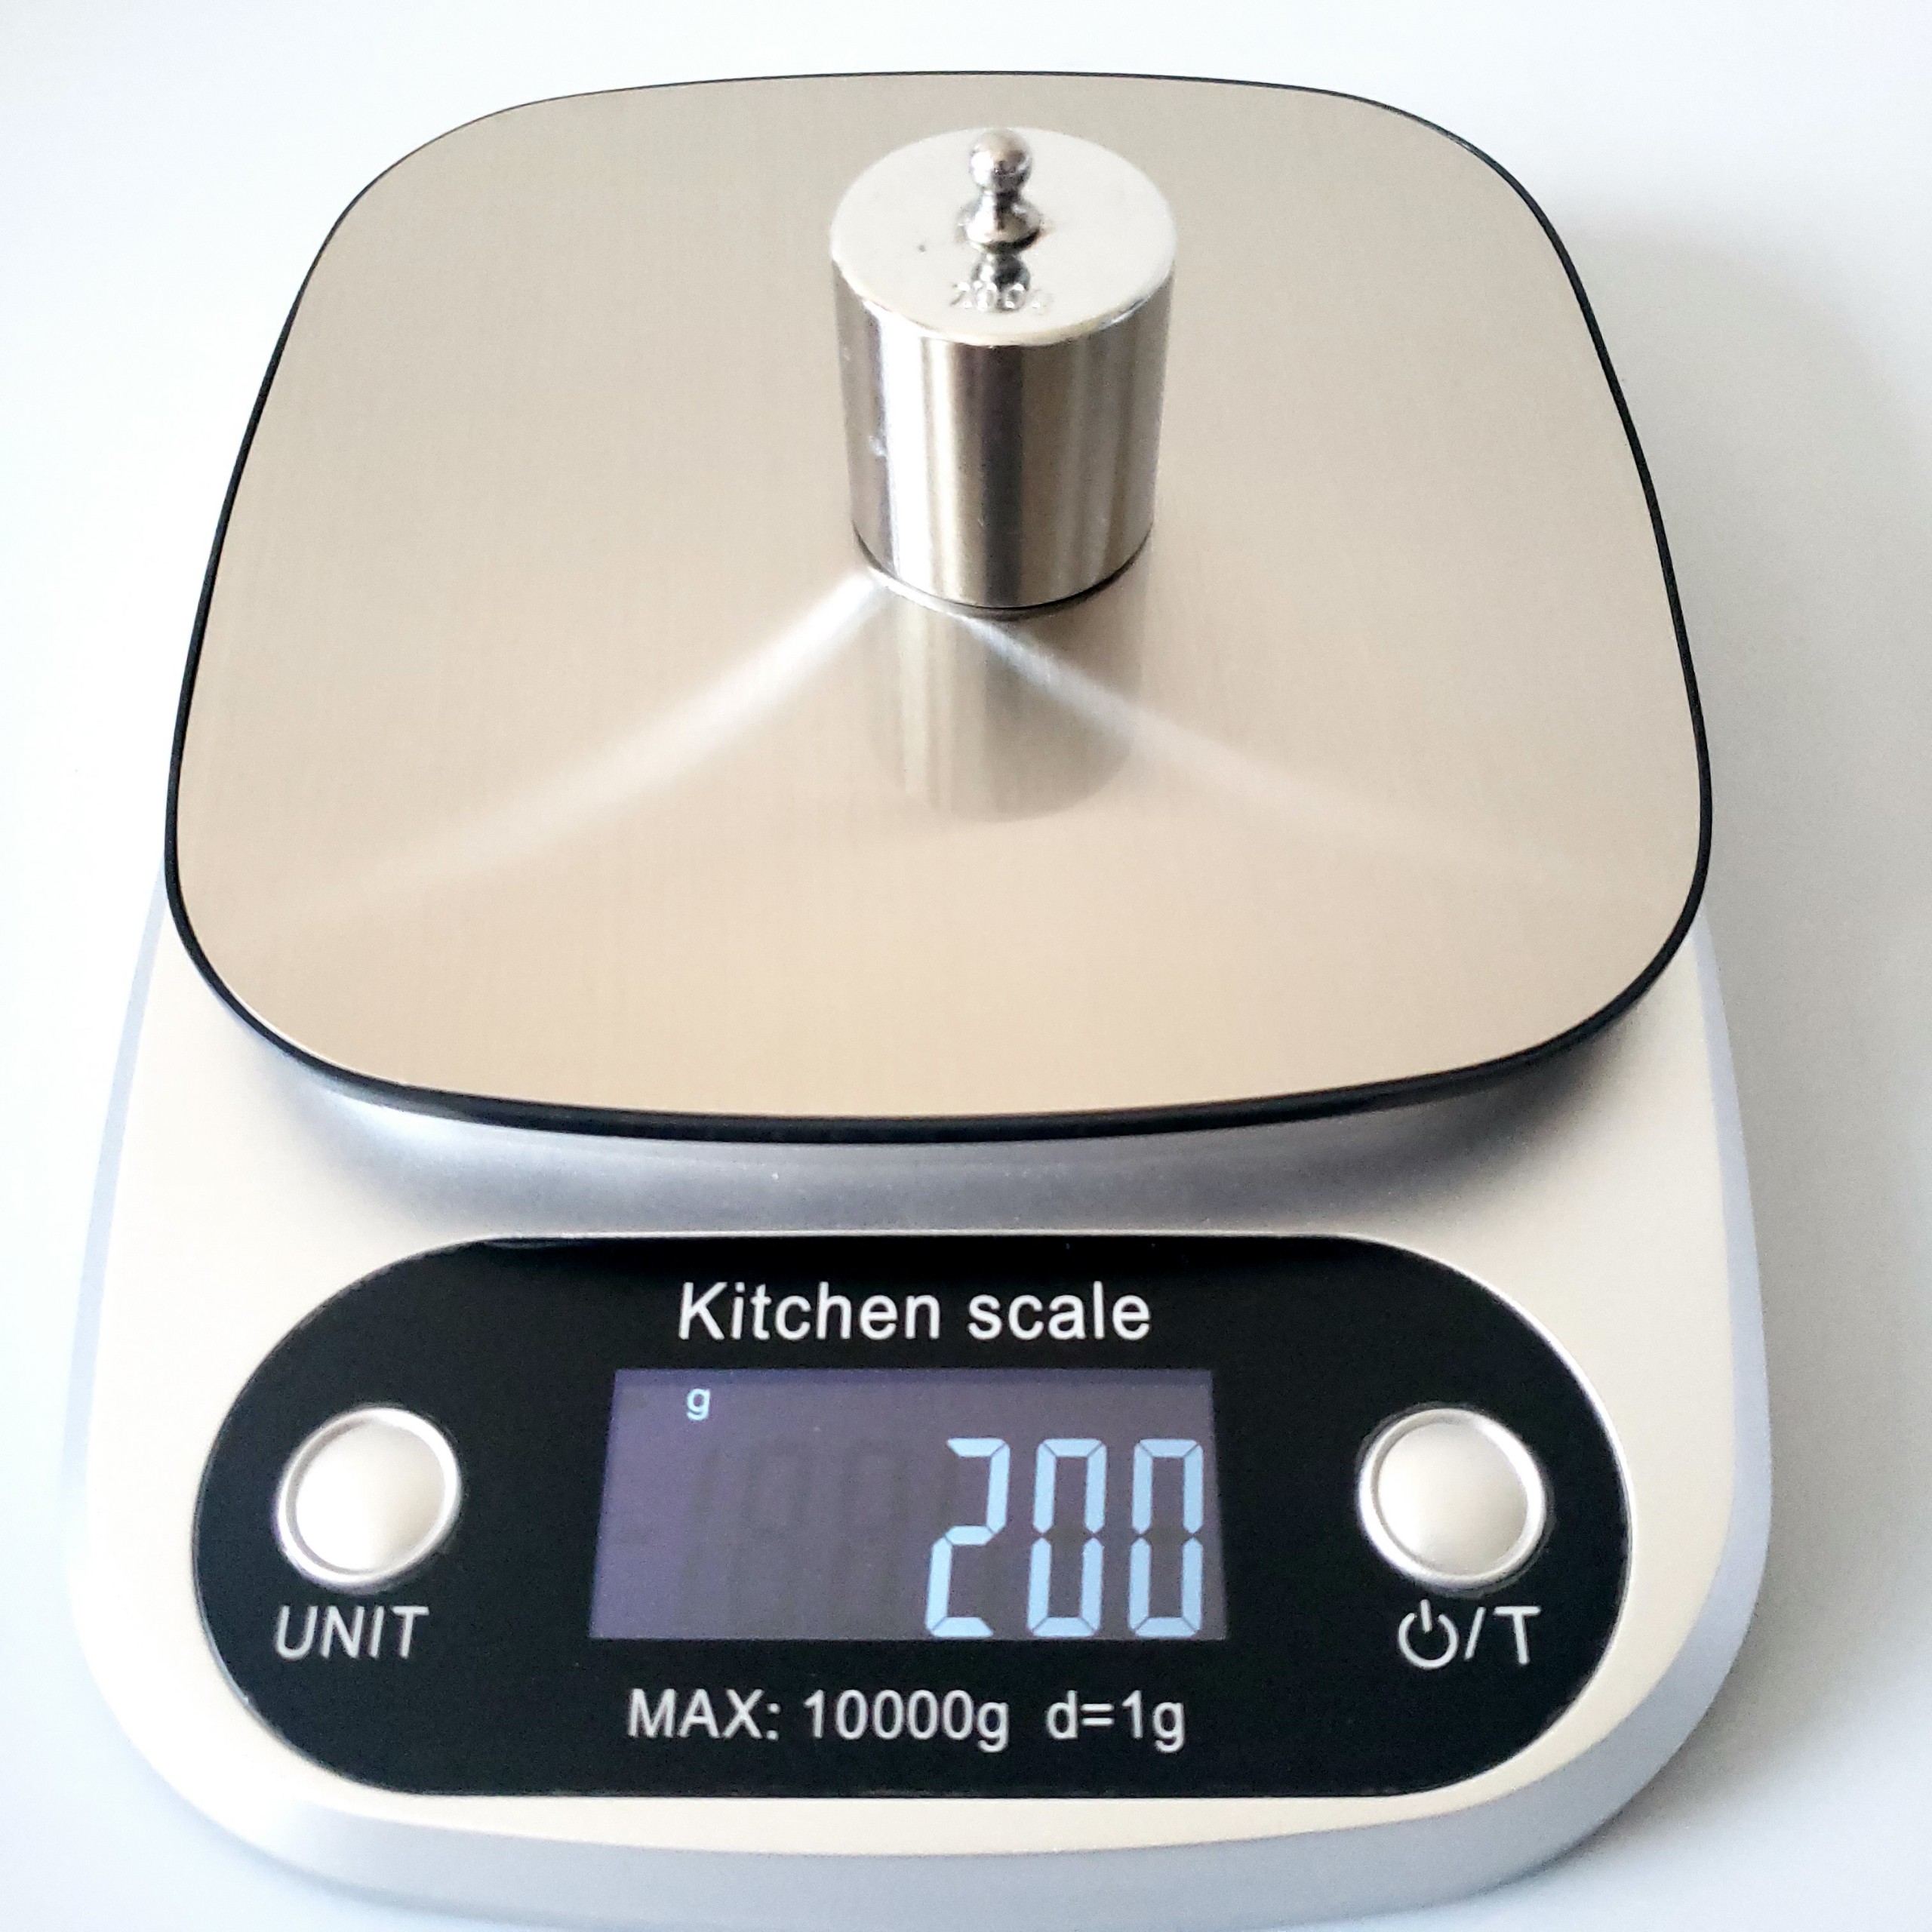 Sở hữu cân điện tử nhà bếp mini, bạn sẽ không bao giờ lo lắng về việc cân sai lượng nguyên liệu cho món ăn. Đây là sản phẩm đáng tin cậy với khả năng cân chính xác và thiết kế nhỏ gọn tiện lợi.